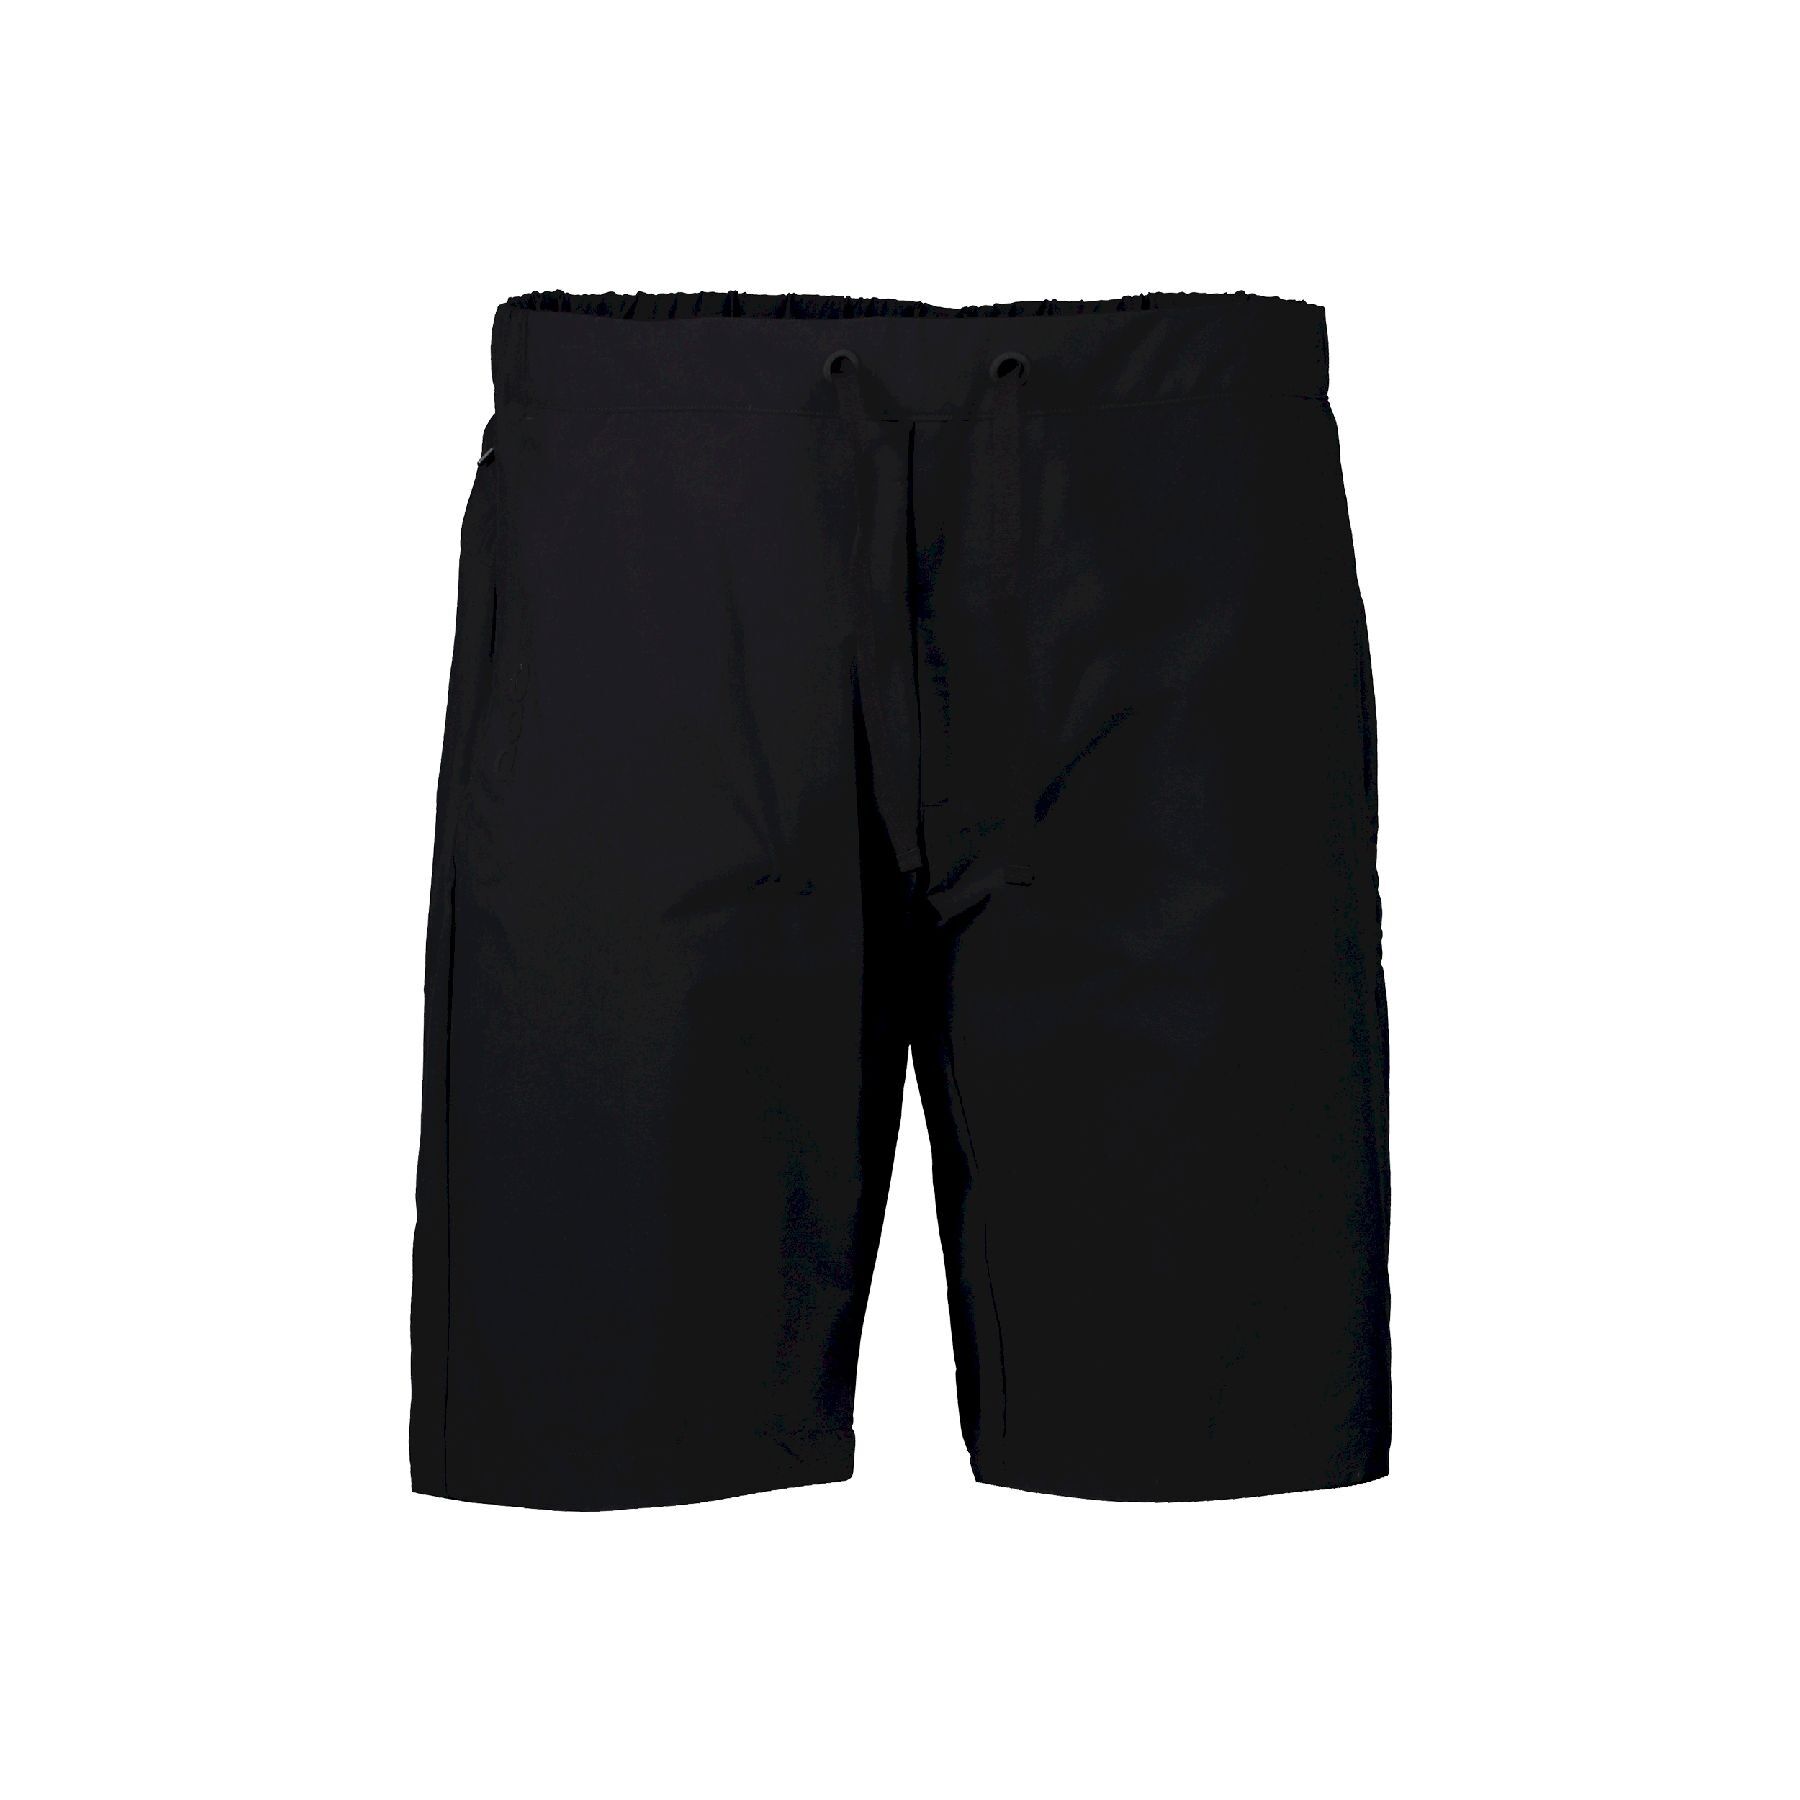 Poc Transcend Shorts - Pantalones cortos MTB - Hombre